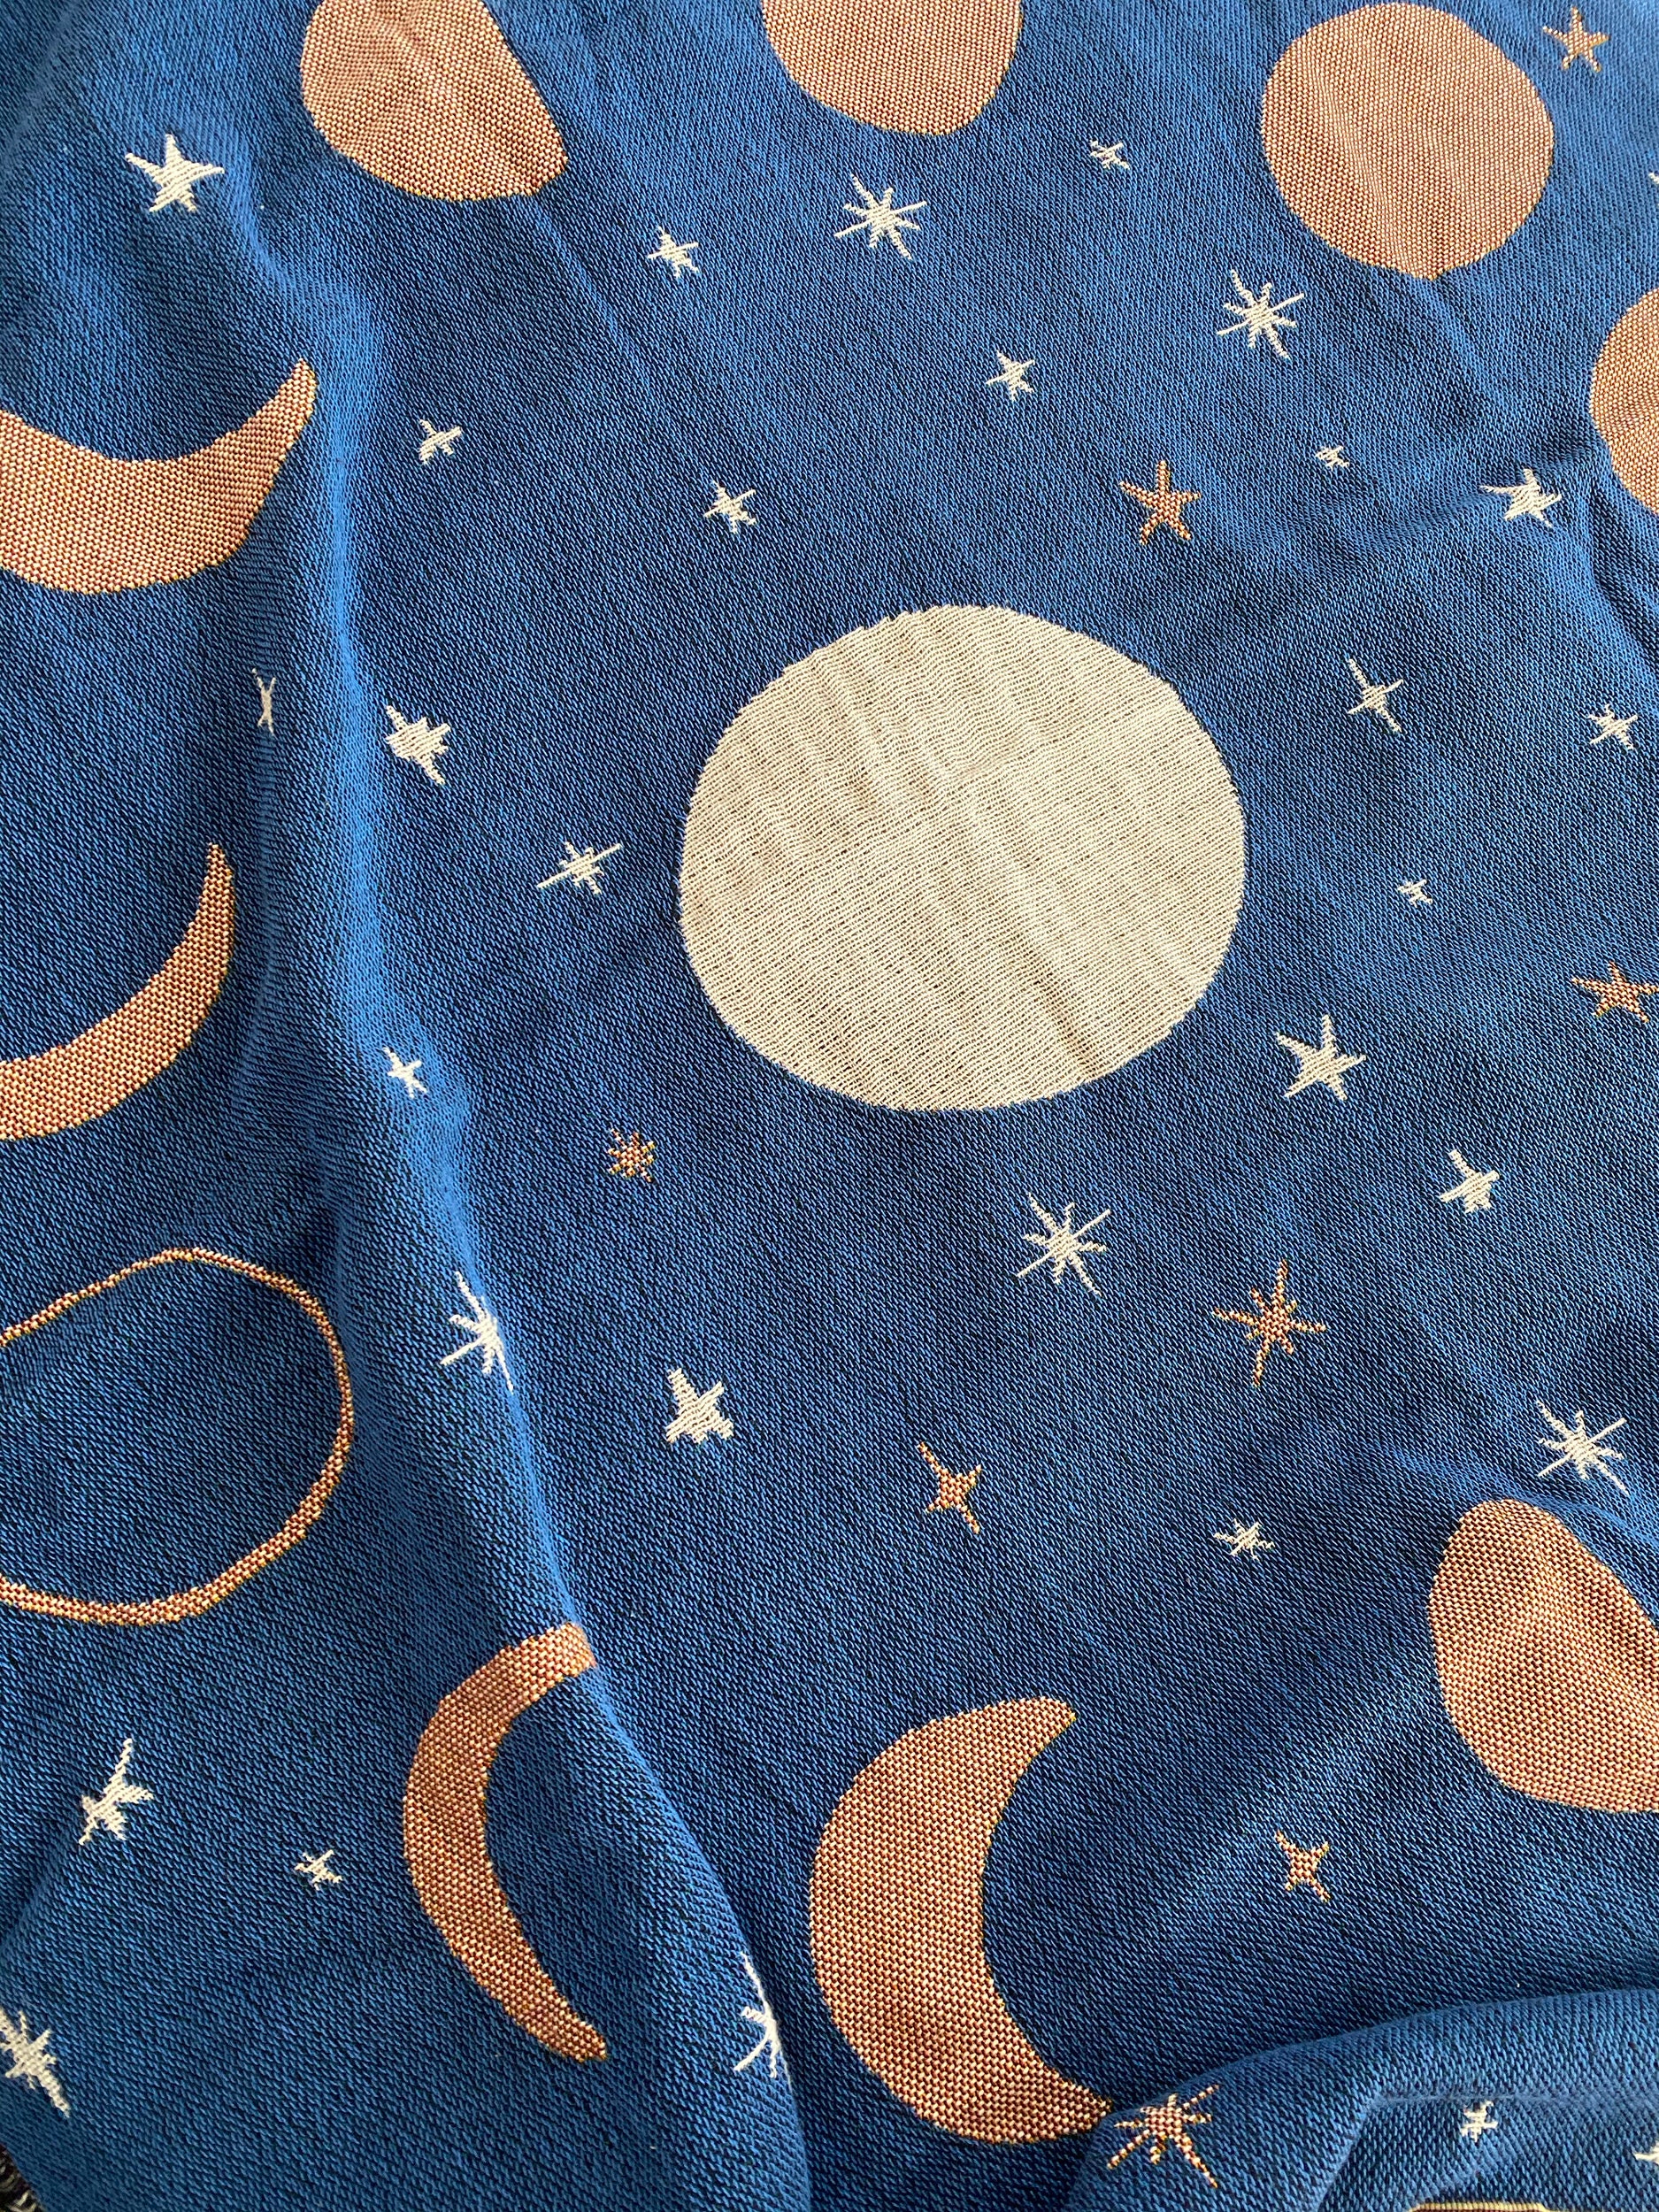 Moon Phases Tapestry Blanket Celestial Star Design Navy - Etsy